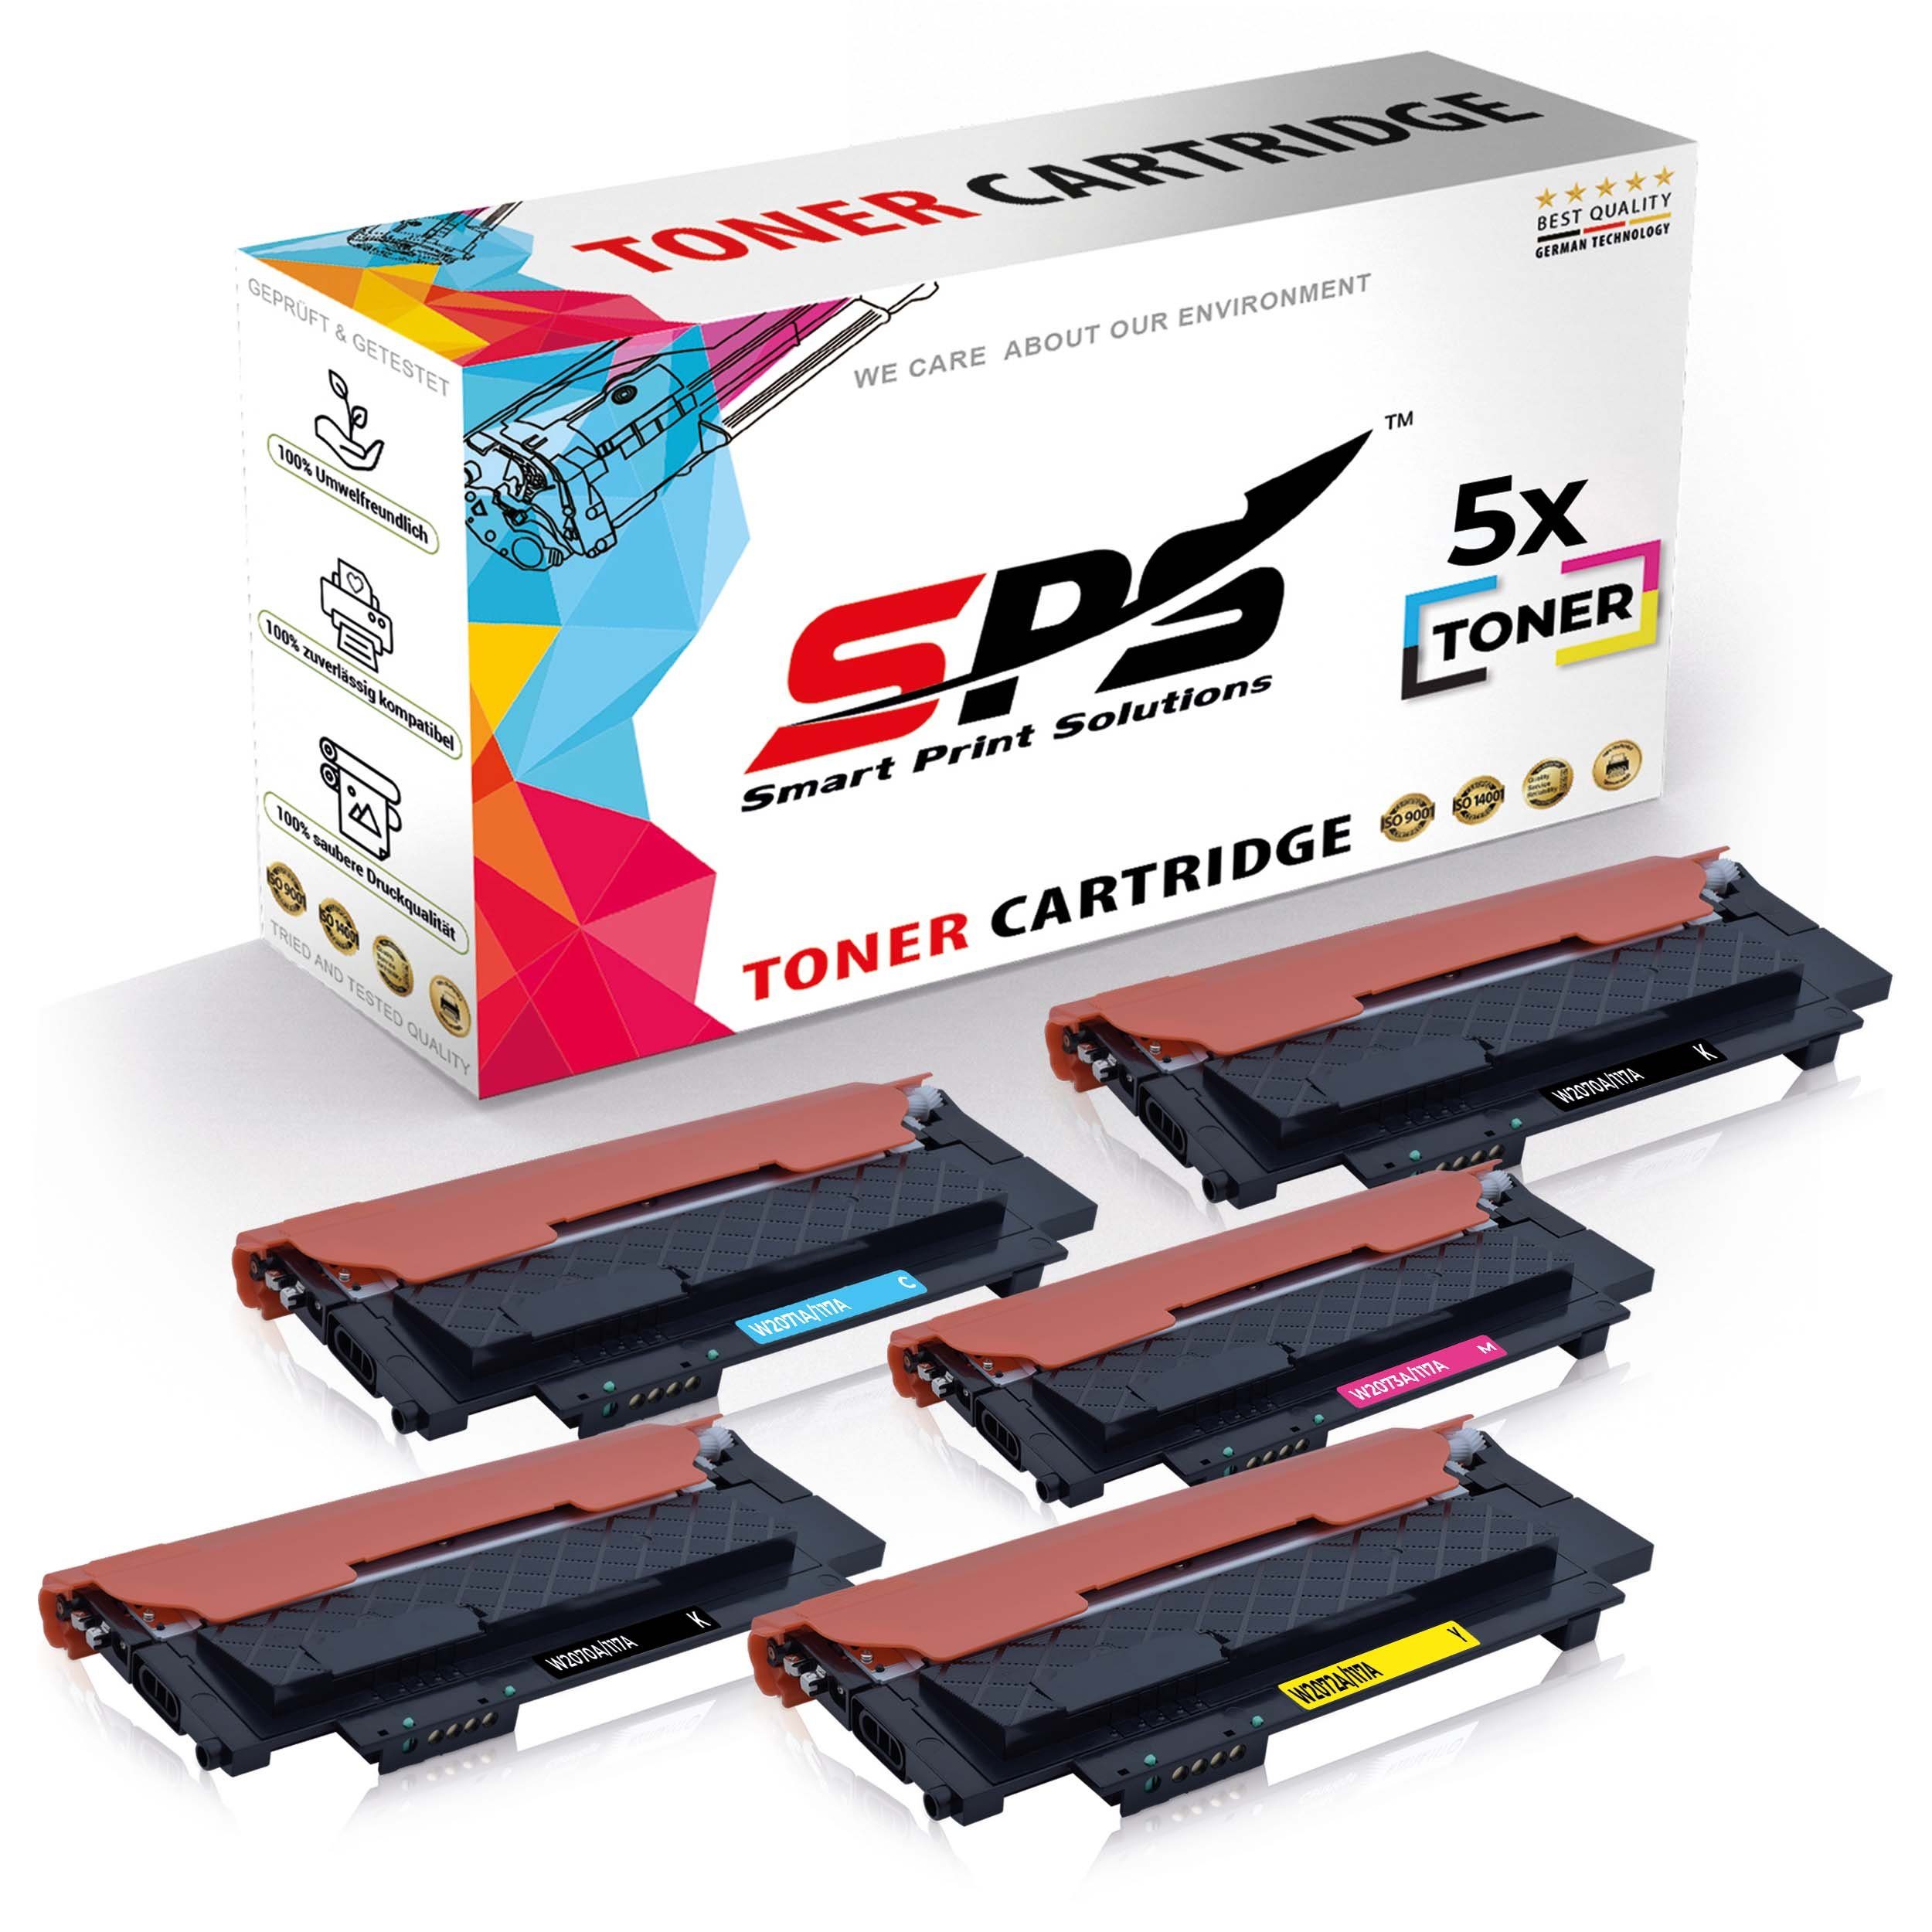 Tonerkartusche Multipack 5x (5er Toner) Laser, HP SPS Color für Kompatibel Pack, 5x Set